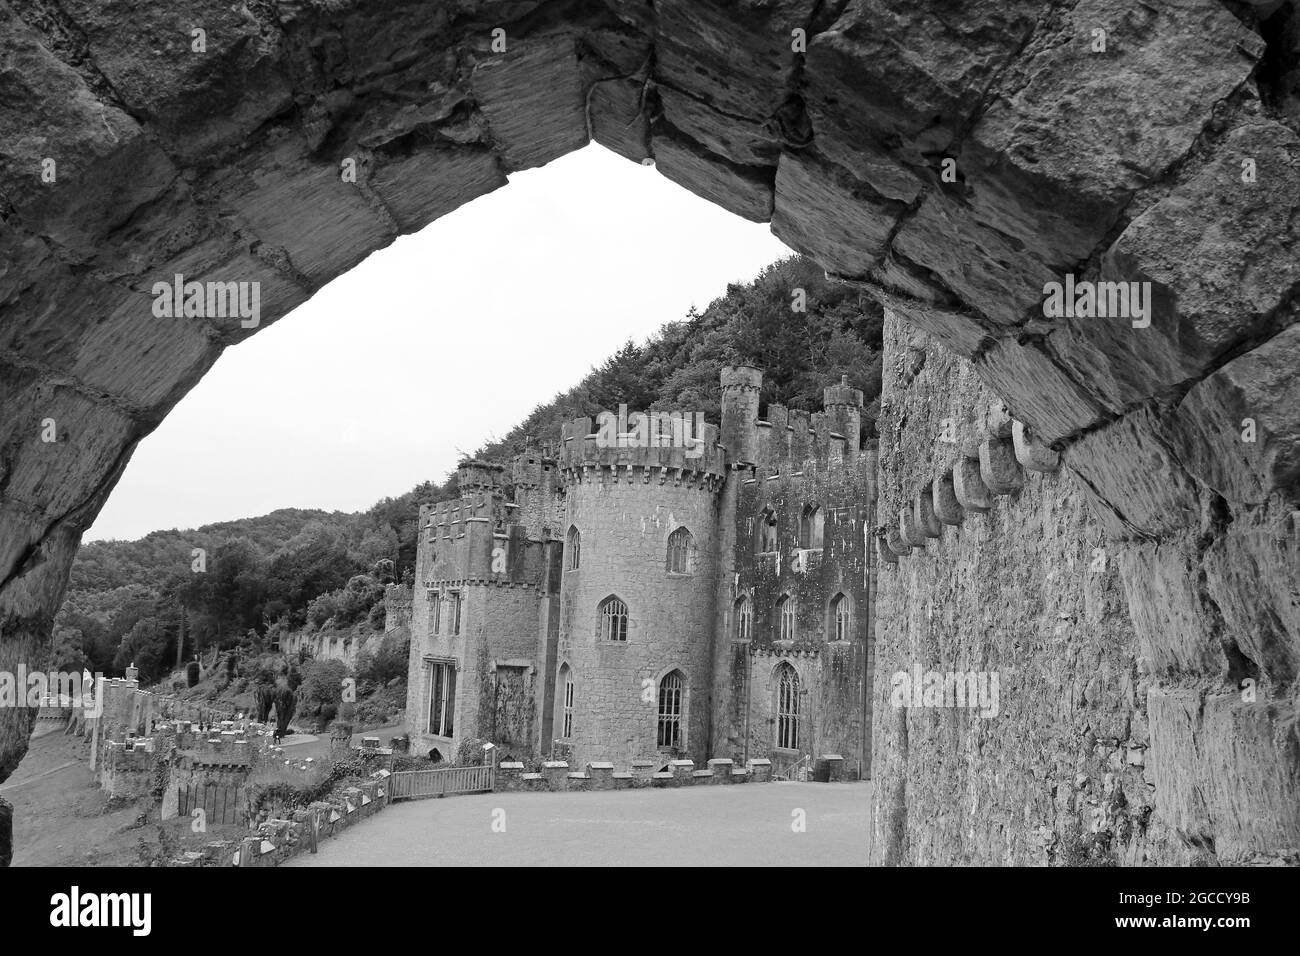 El castillo de Gwrych es una casa de campo del siglo 19th catalogada como de grado I cerca de Abergele en Conwy, Gales Foto de stock